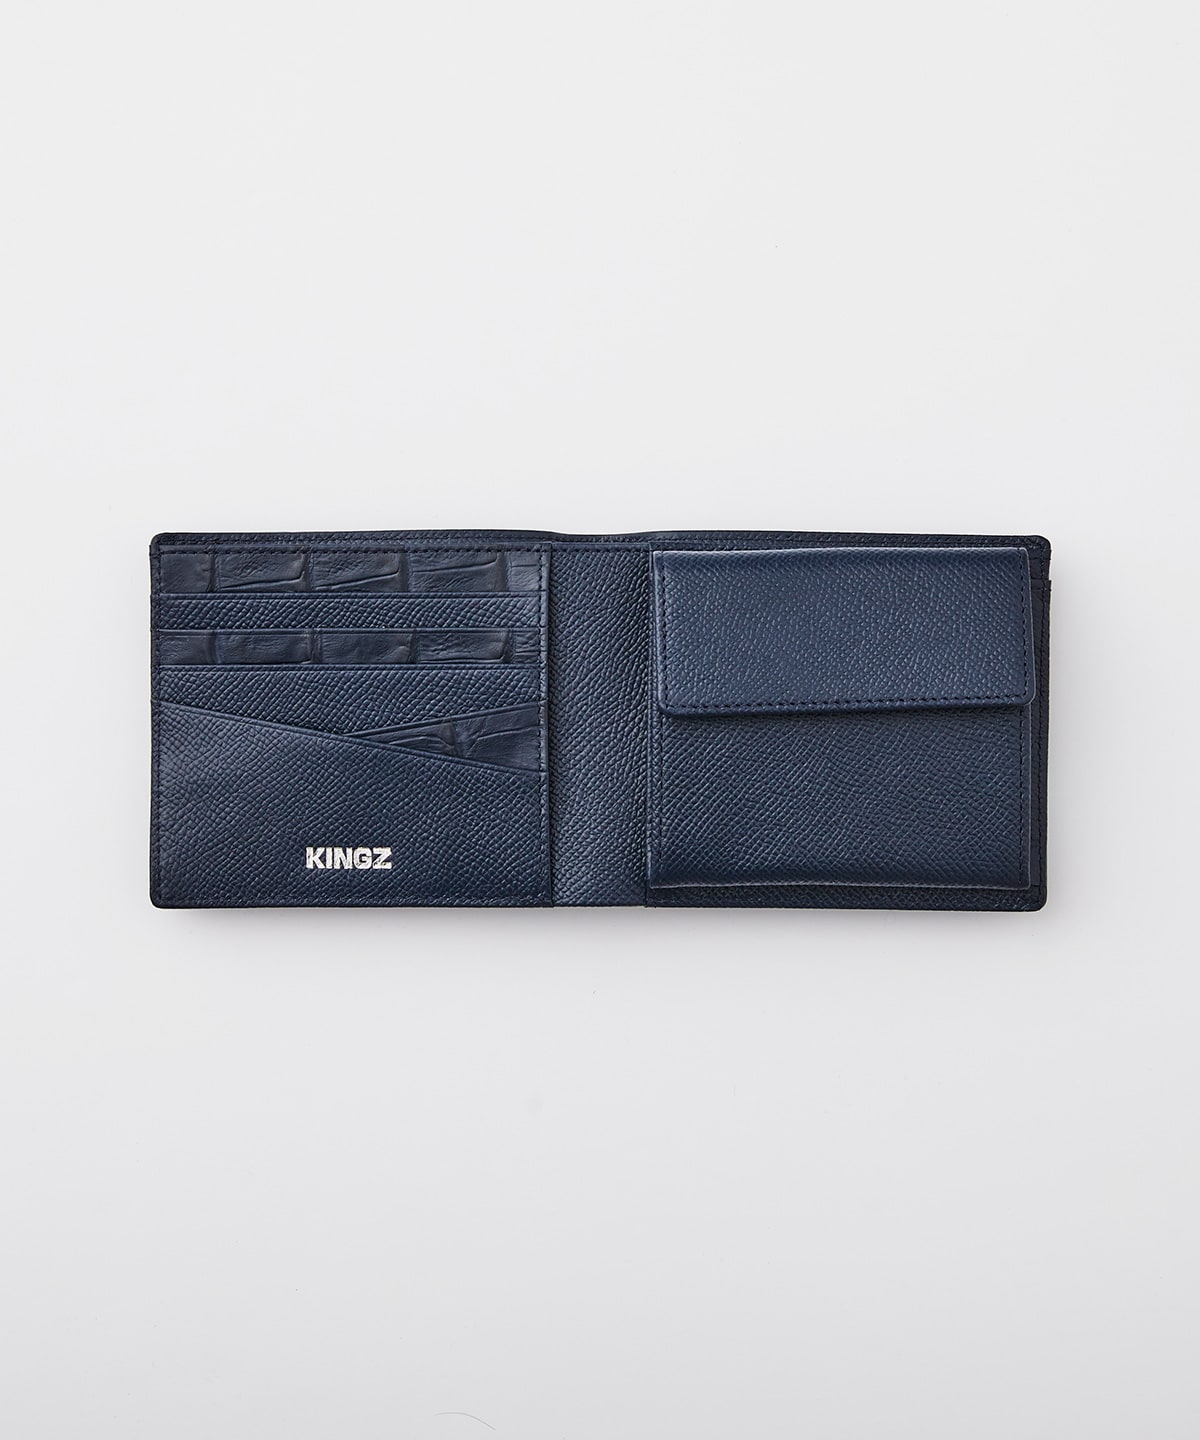 クロコ×スムース 折財布